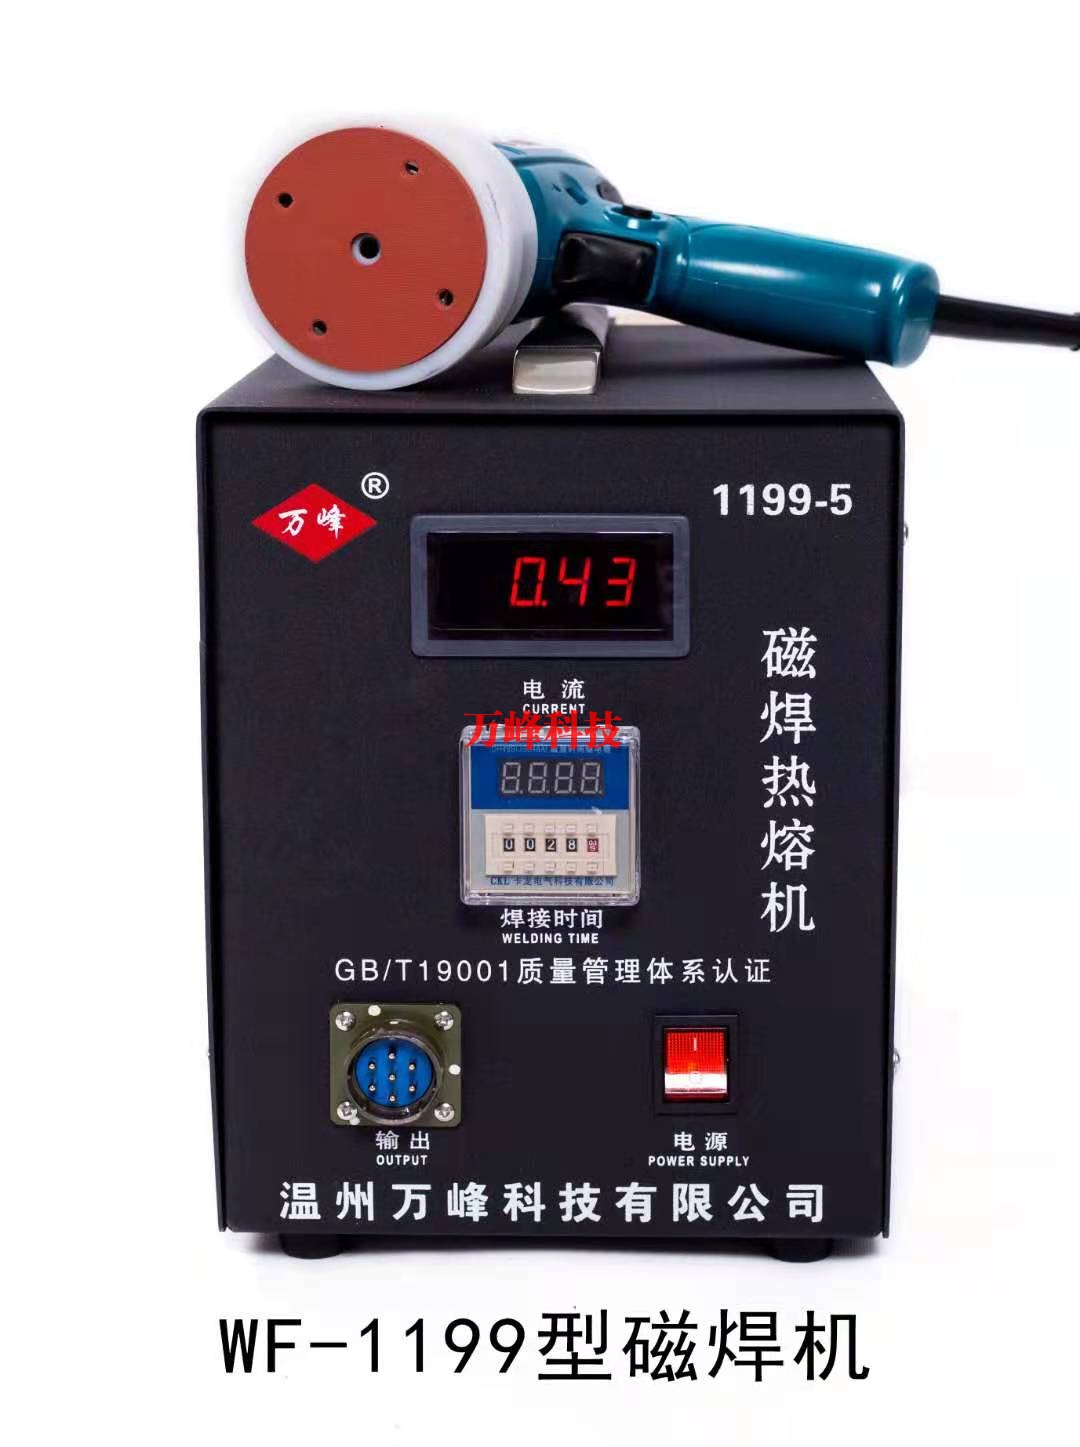 天津WF-1199型磁焊热熔机